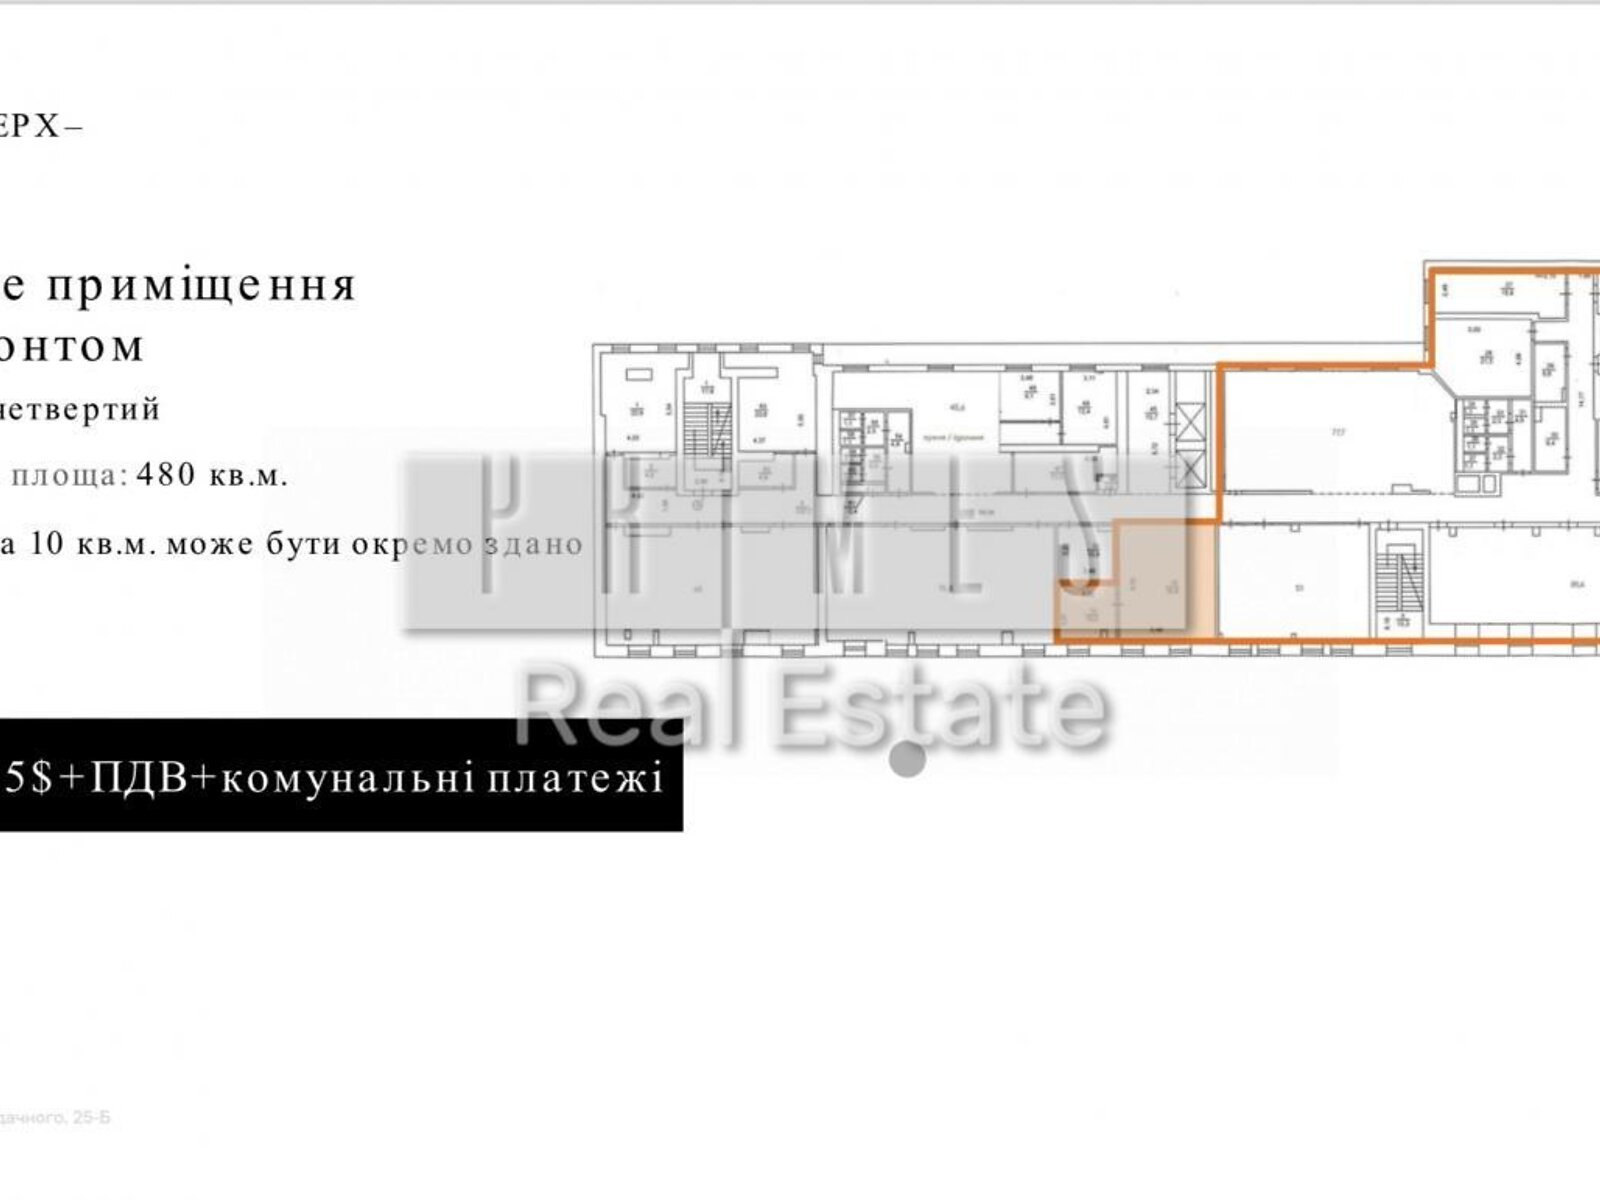 Аренда офисного помещения в Киеве, Петра Сагайдачного улица 25Б, помещений - 8, этаж - 4 фото 1